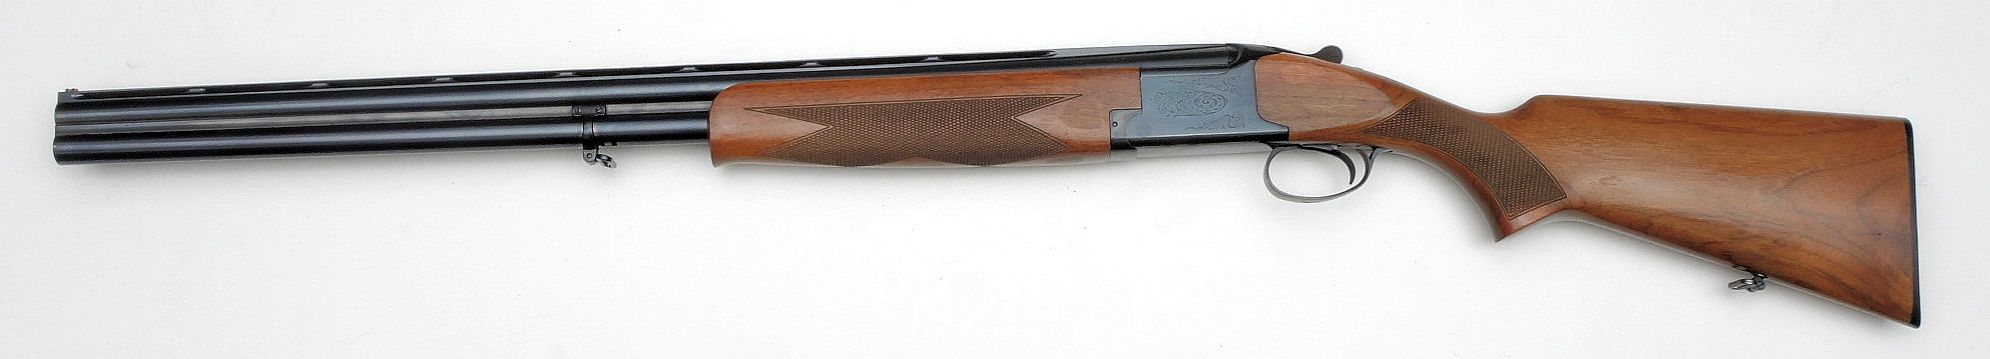 FN/Browning Mod. 125 12/70